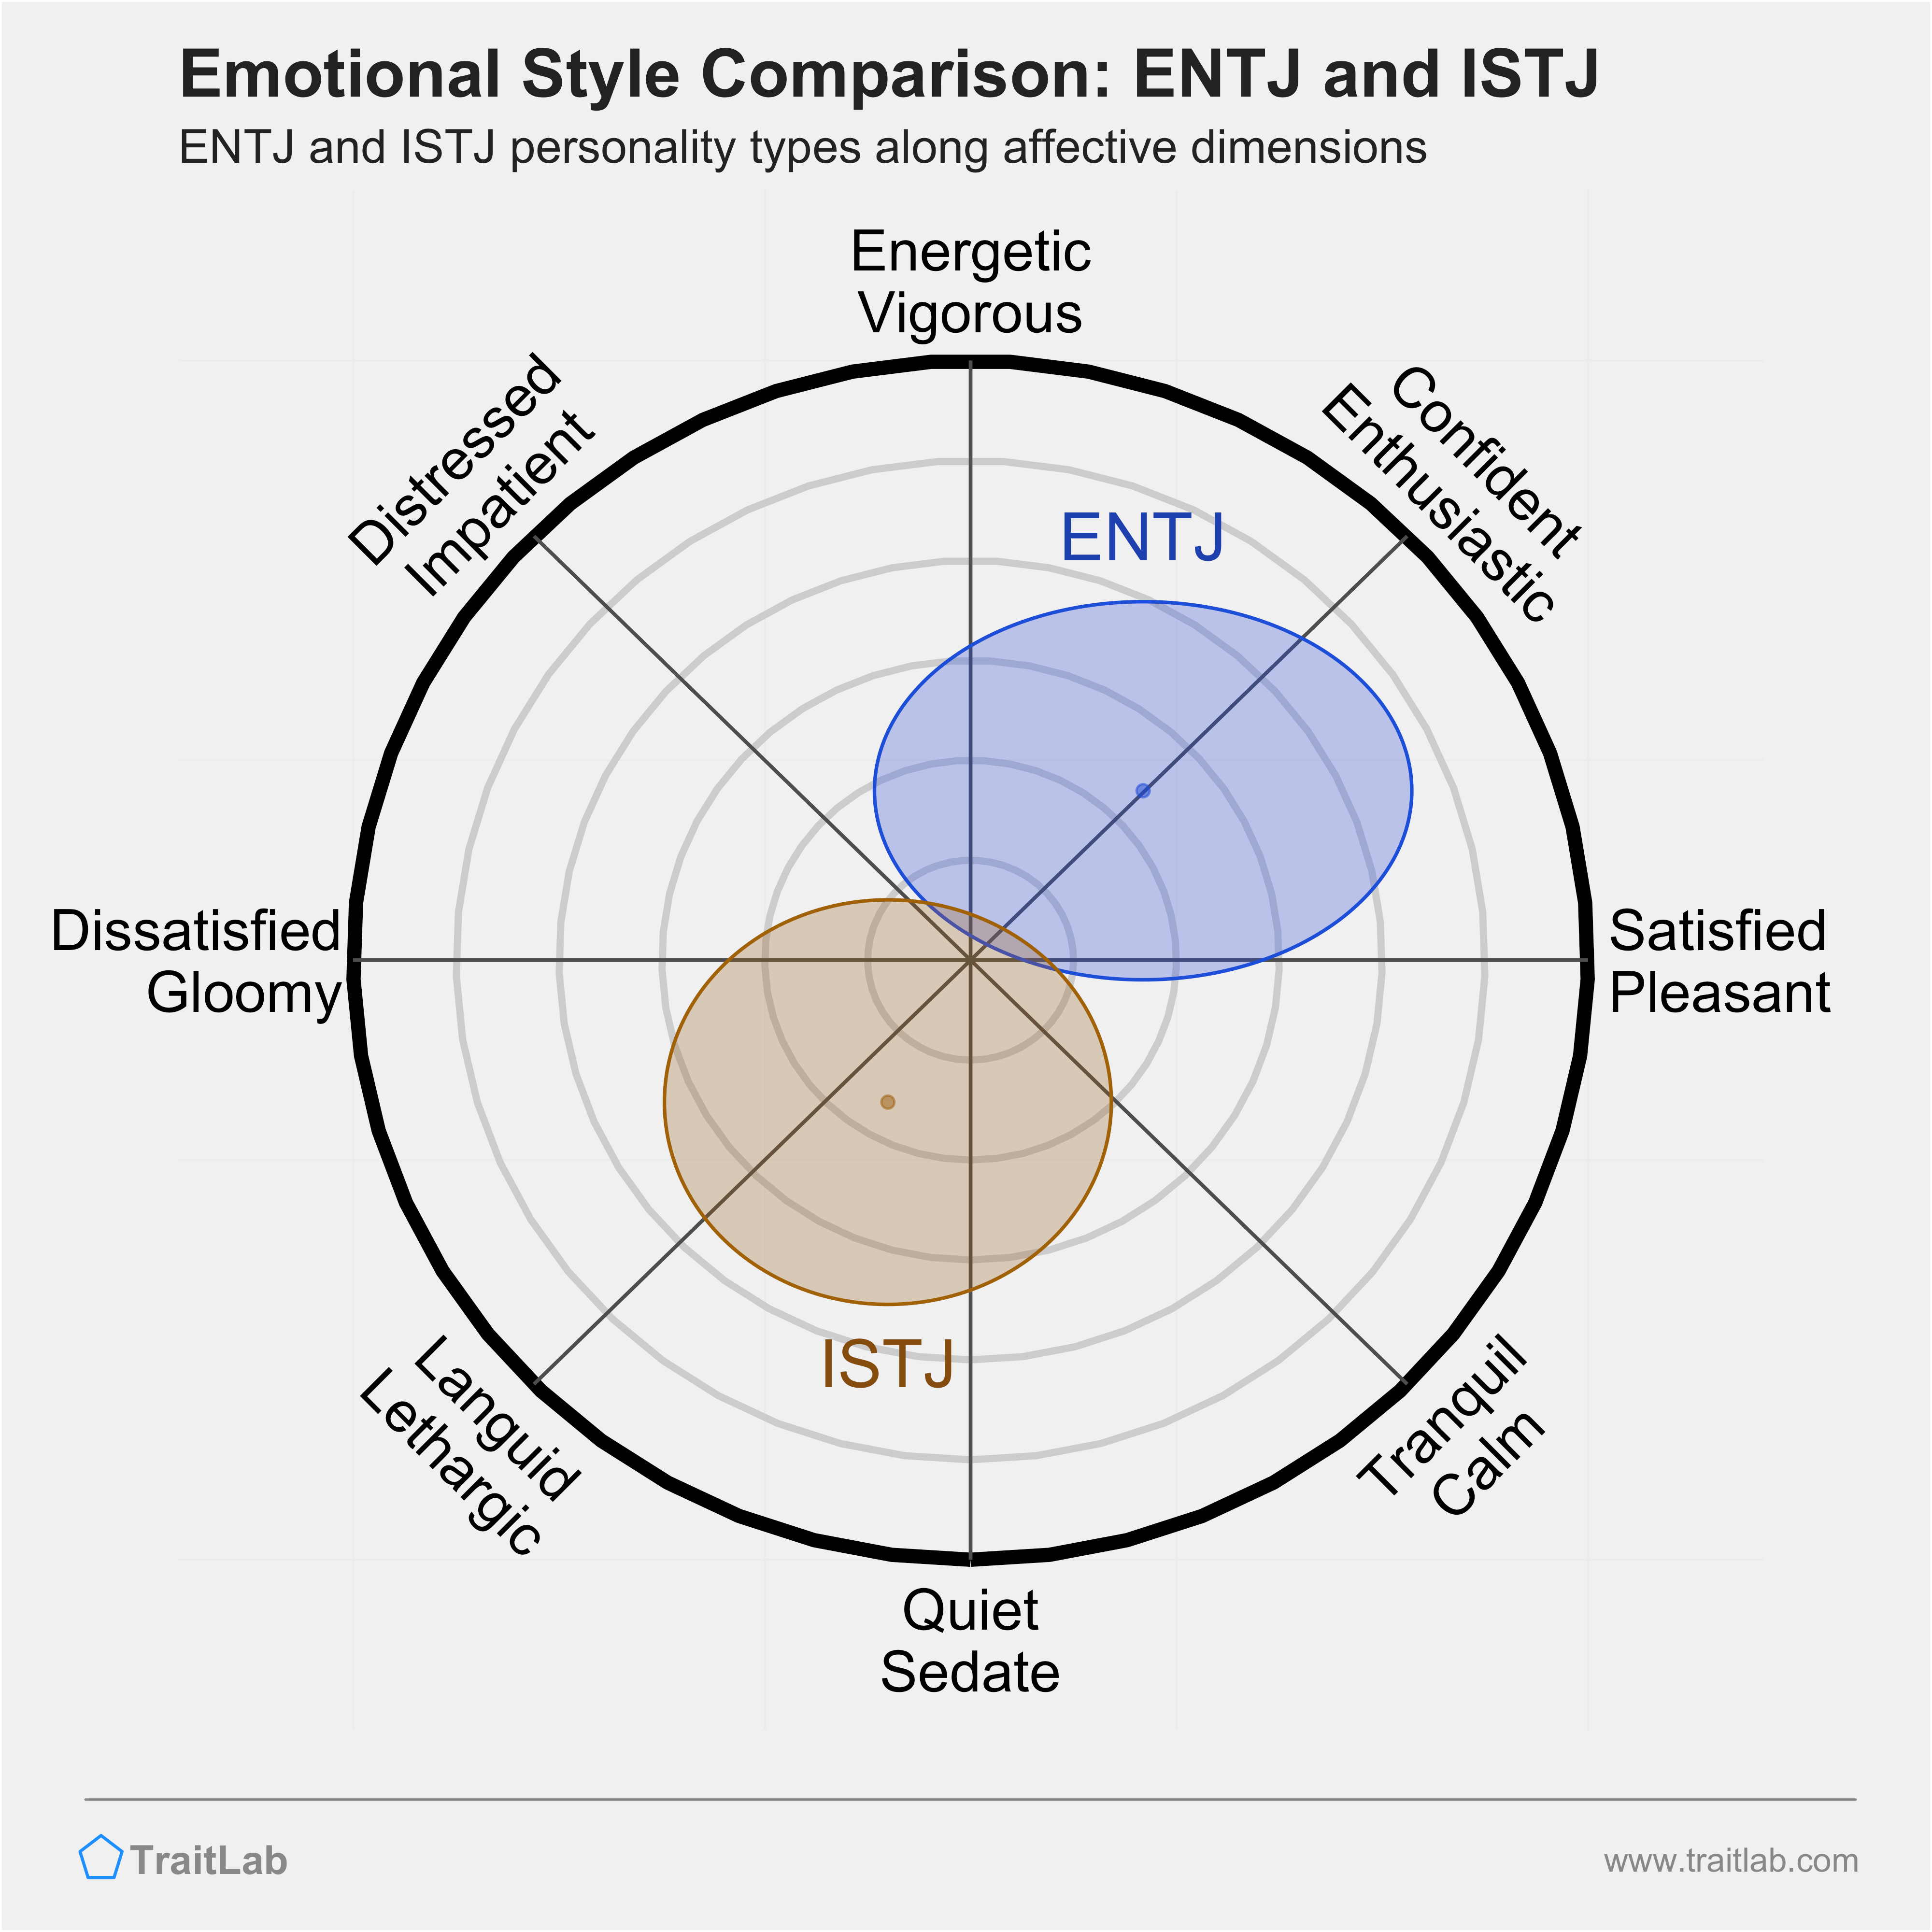 ENTJ and ISTJ comparison across emotional (affective) dimensions